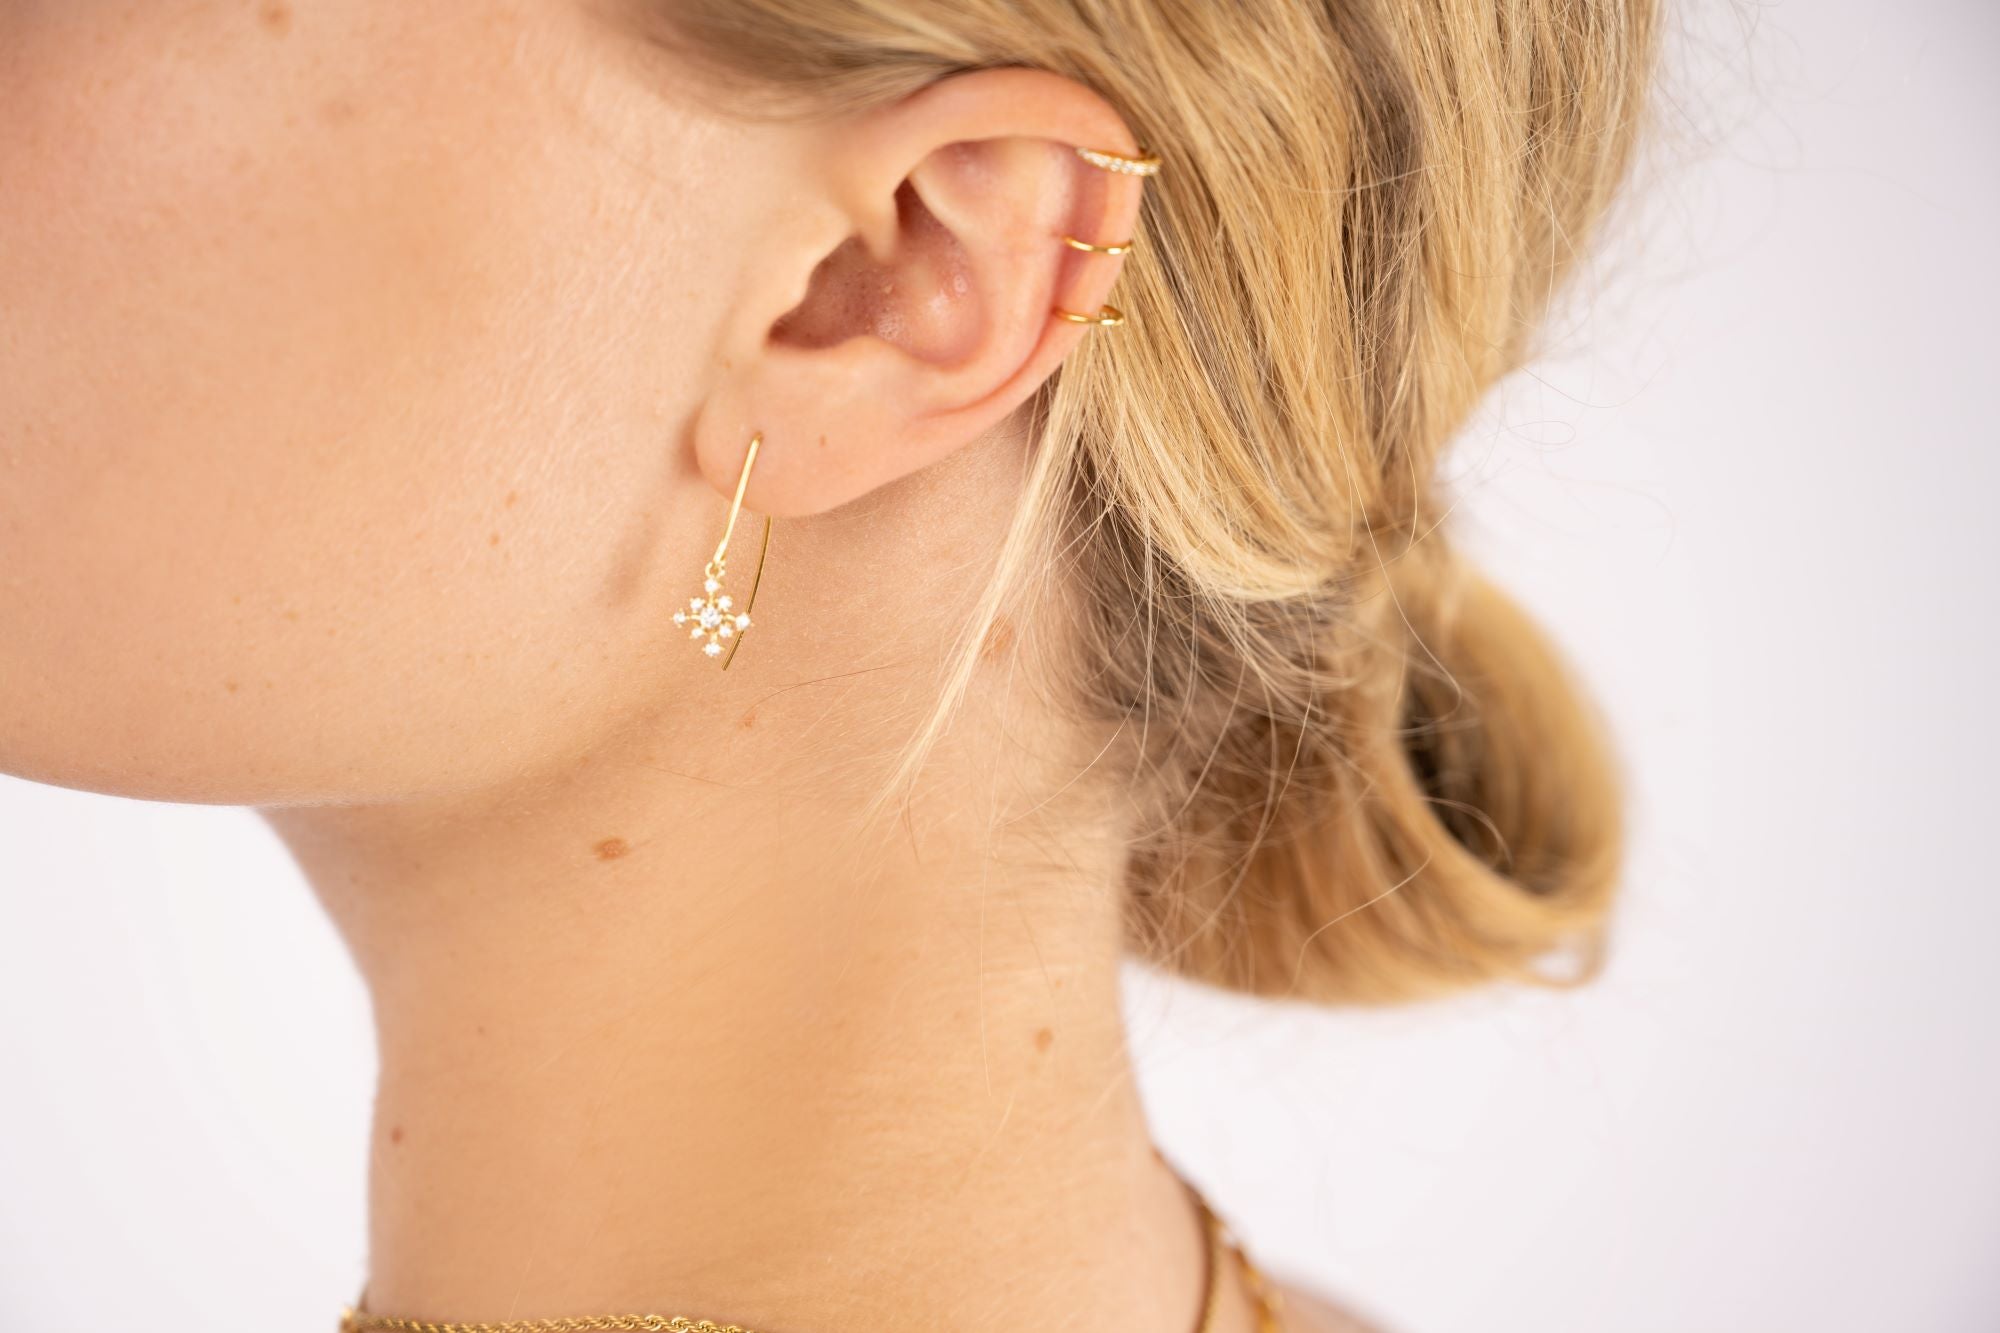 snowflake earrings, 925 Sterling Silber Ohrringe